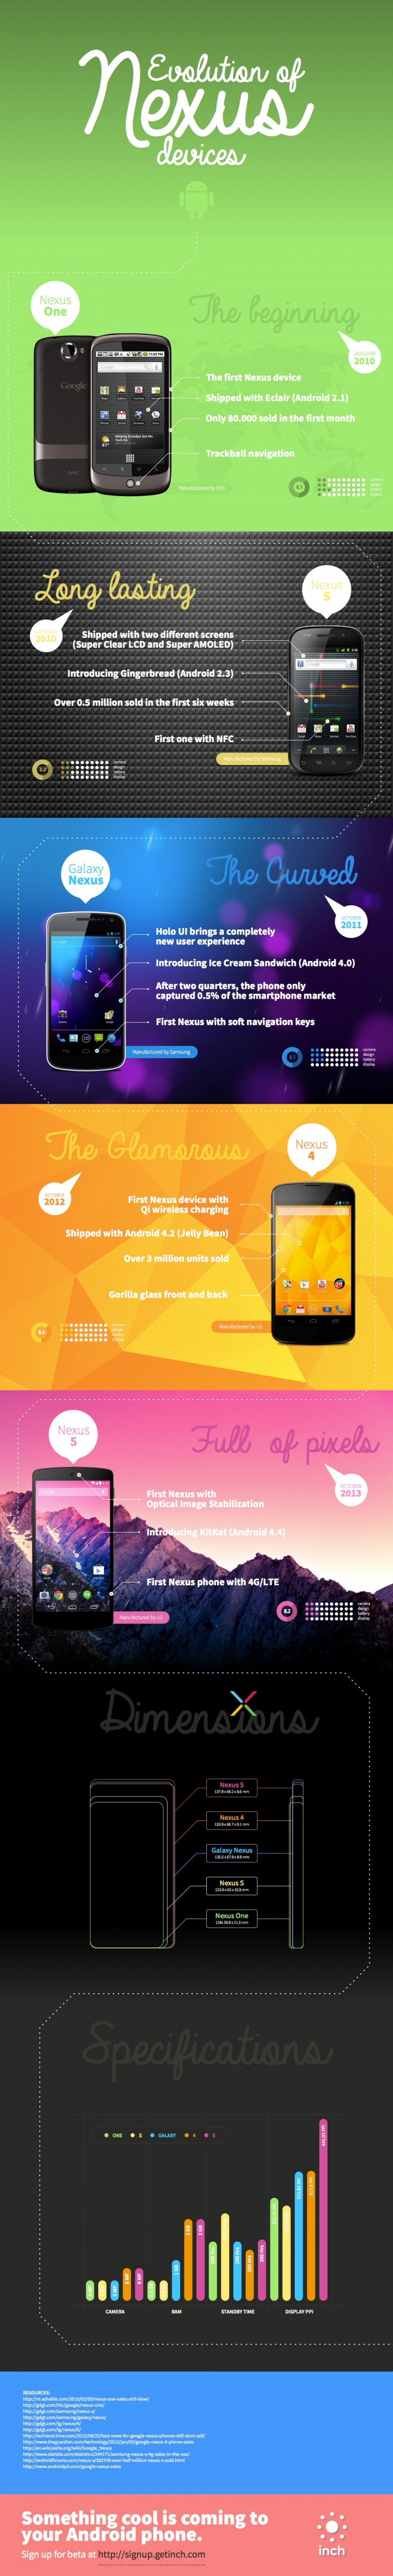 Android - Evolution des appareils Nexus - Infographie janvier 2014